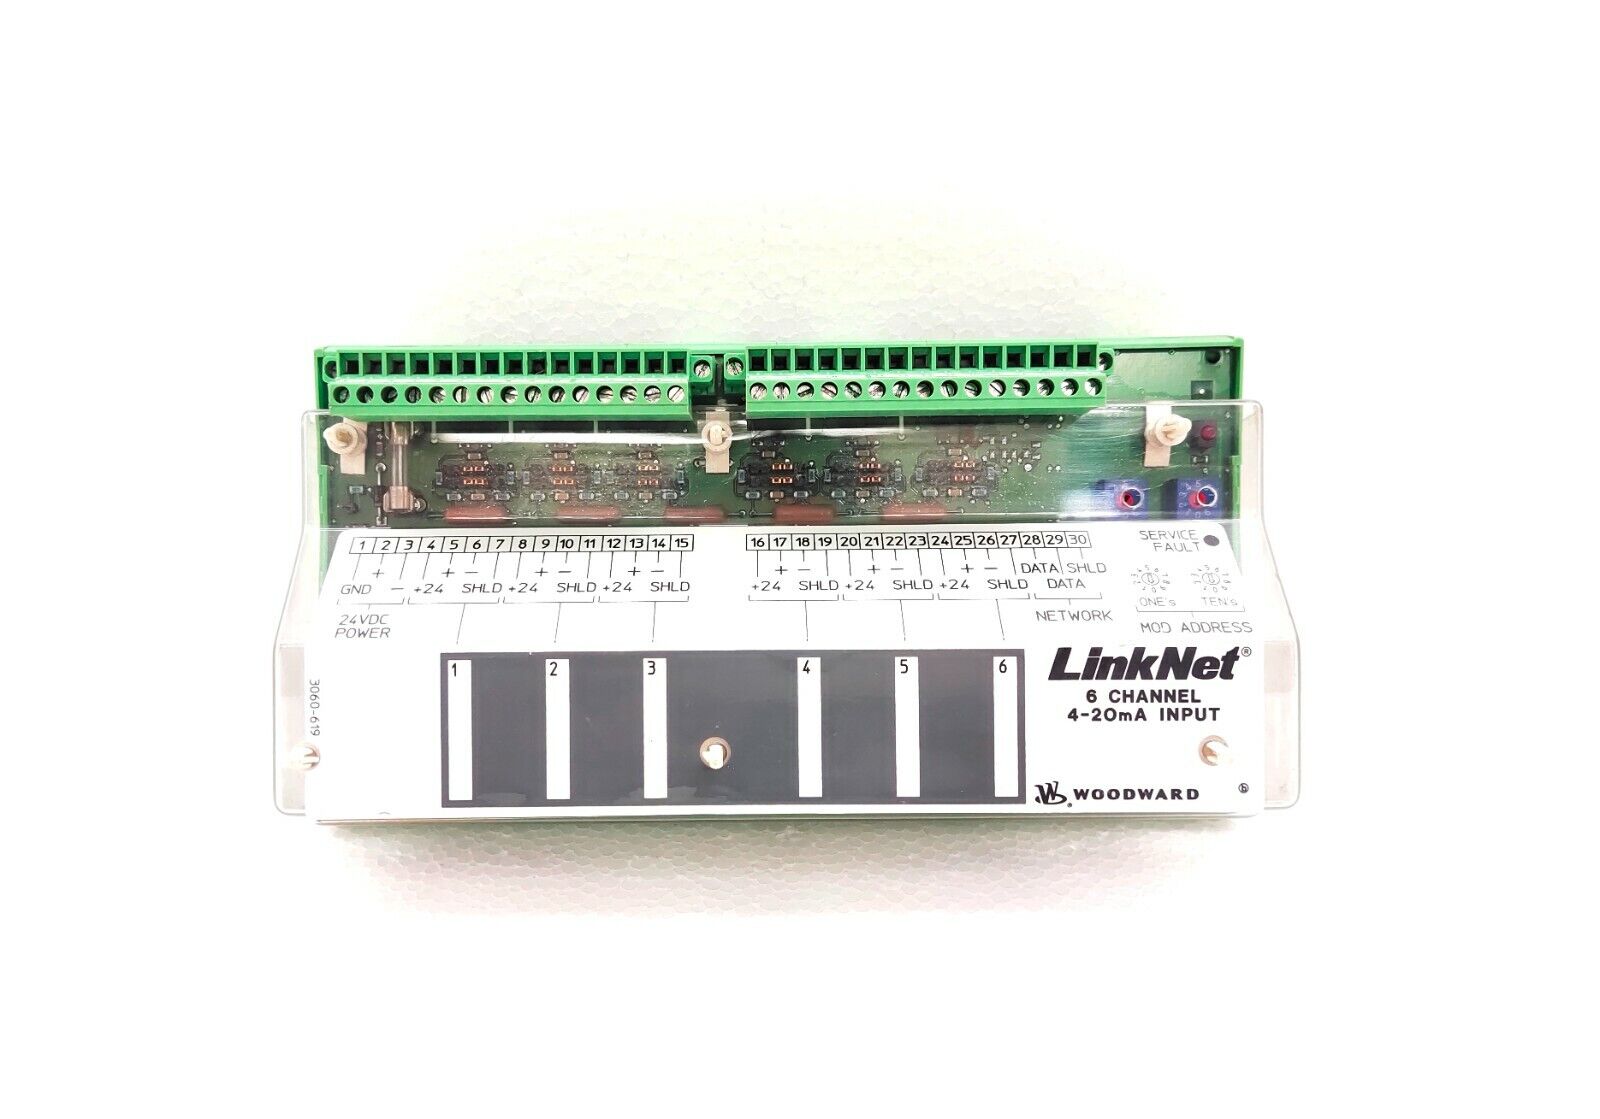 9905-969 - Linknet 6 Channel Analog Input Module (4-20mA)